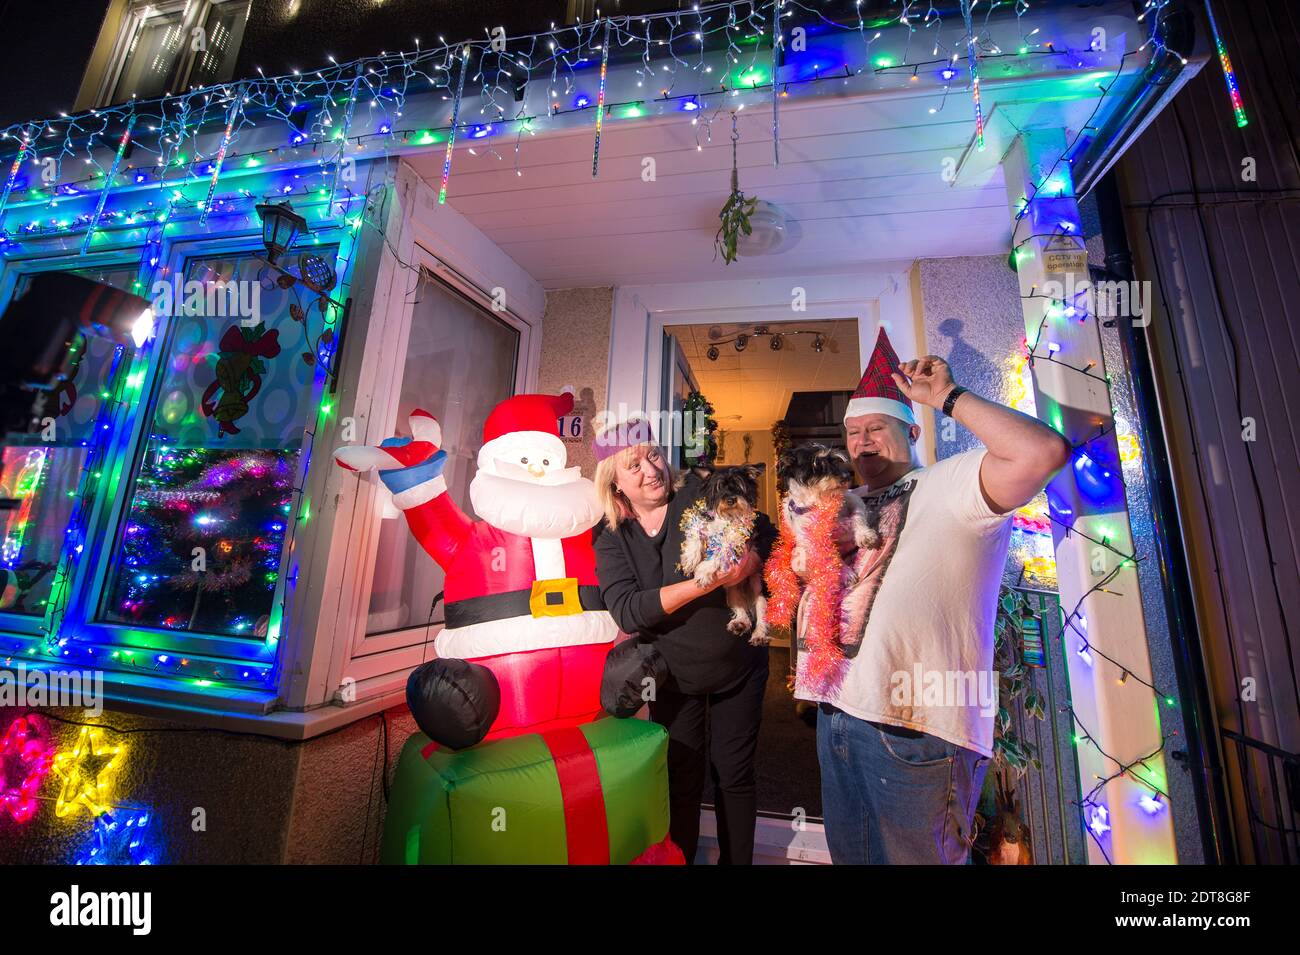 Glasgow, Escocia, Reino Unido. 21 de diciembre de 2020. Foto: Familia Aitcheson: Sheree; John. Los residentes de Balarnock pusieron un espectáculo de luces de Navidad fantástico. Los residentes de Balarnock tienen un gran sentido de la comunidad, y les encanta difundir la alegría de Navidad poniendo en una exhibición festiva que difunde el mensaje de Navidad. En un año en el que COVID19 ha dominado los titulares durante casi un año, a la gente le gusta ver luces coloridas y disfrutar de la temporada festiva. Crédito: Colin Fisher/Alamy Live News Foto de stock